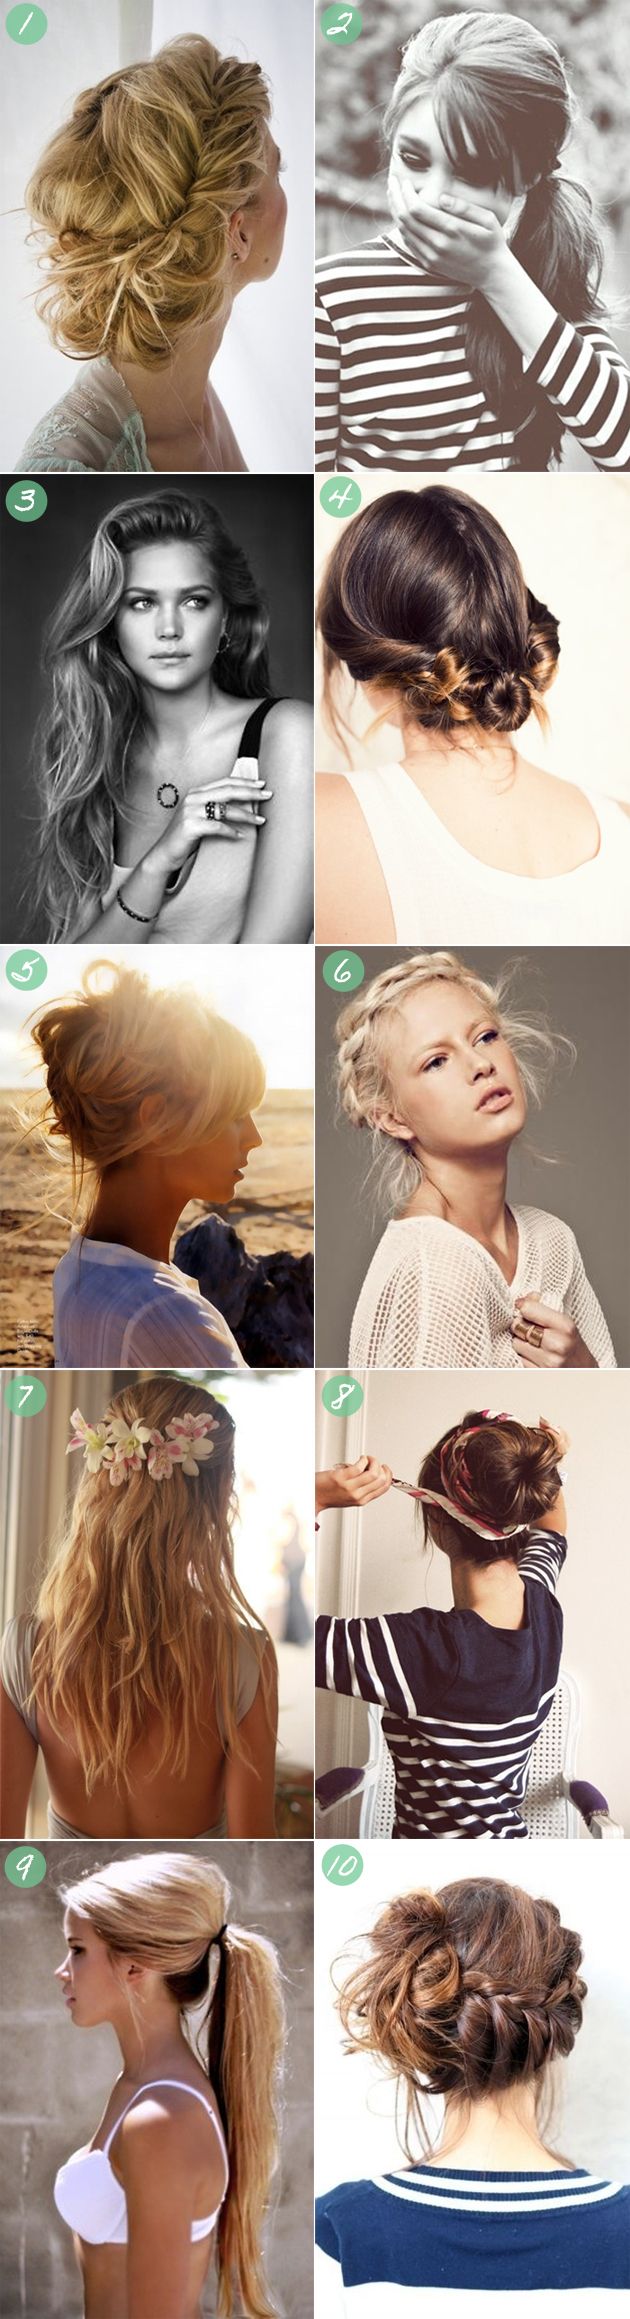 10 summer hairstyles